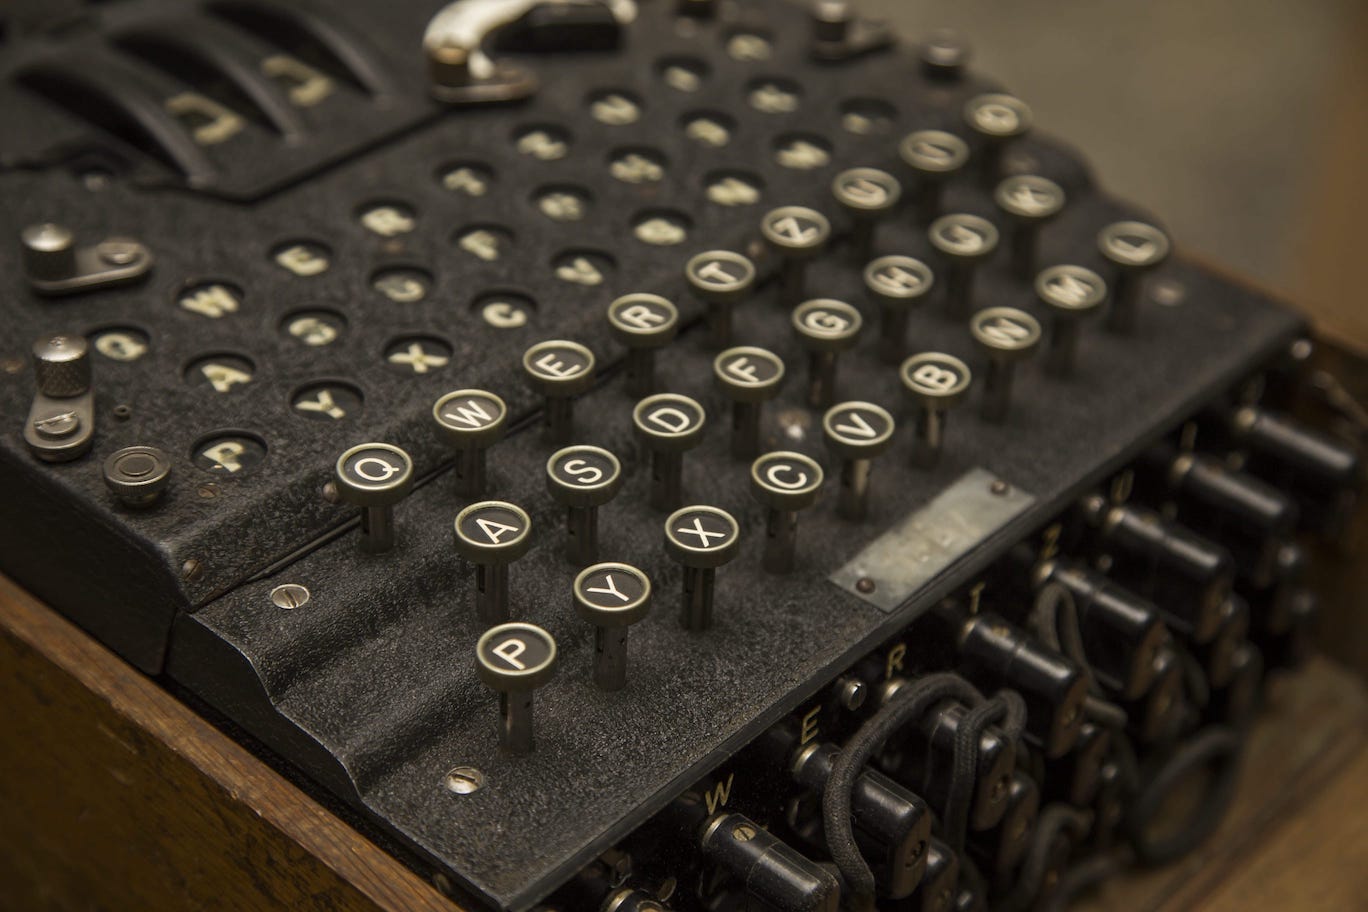 La machine Enigma